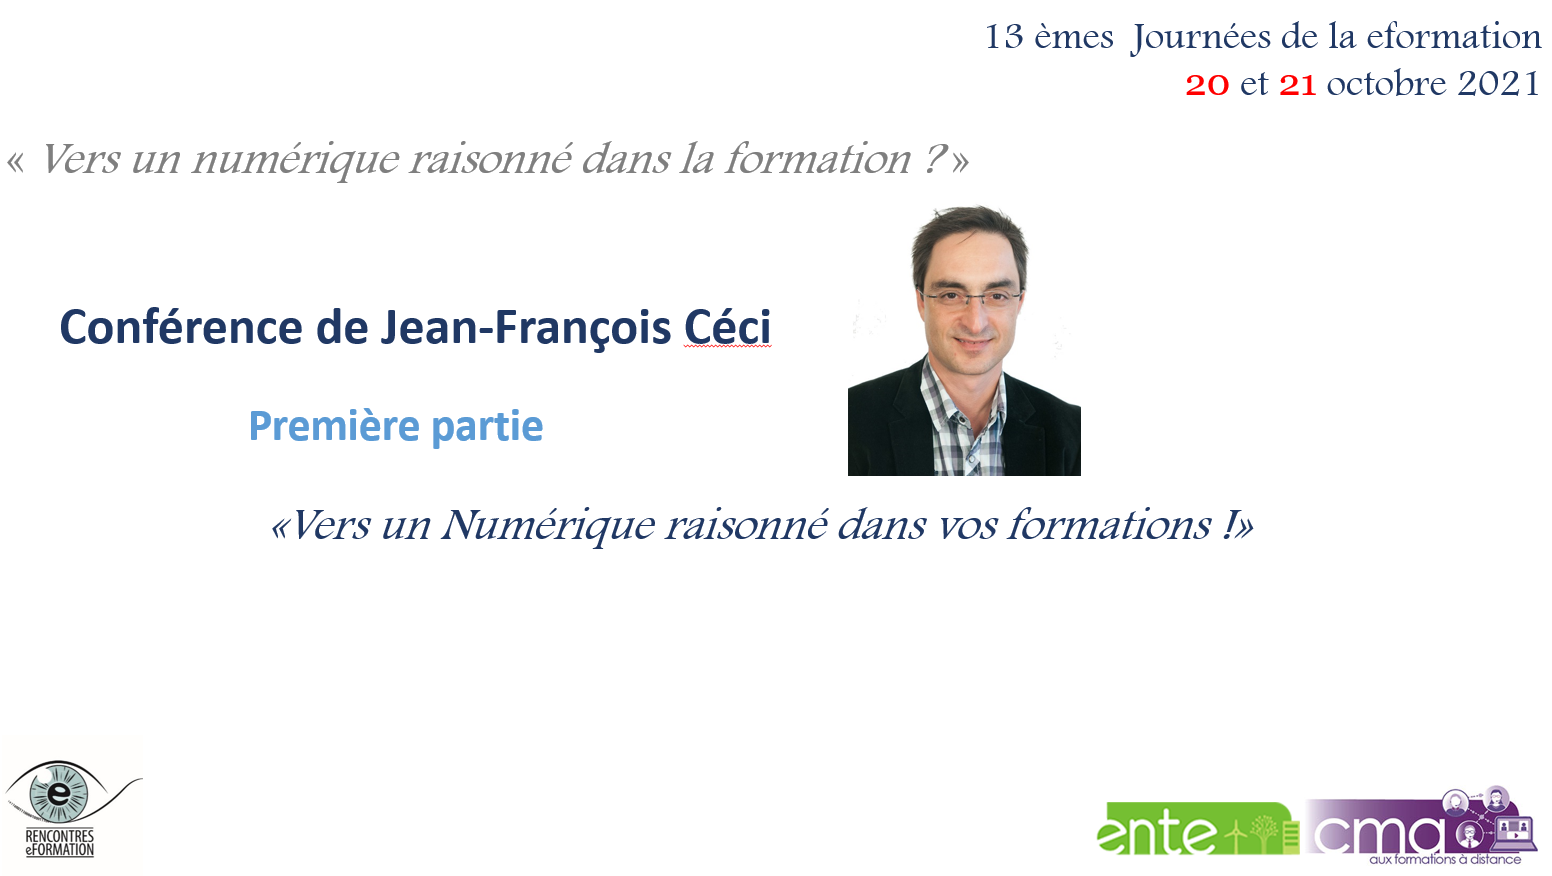 Conférence de Jean-François Céci "Vers un numérique raisonné dans vos formations !"
Première partie